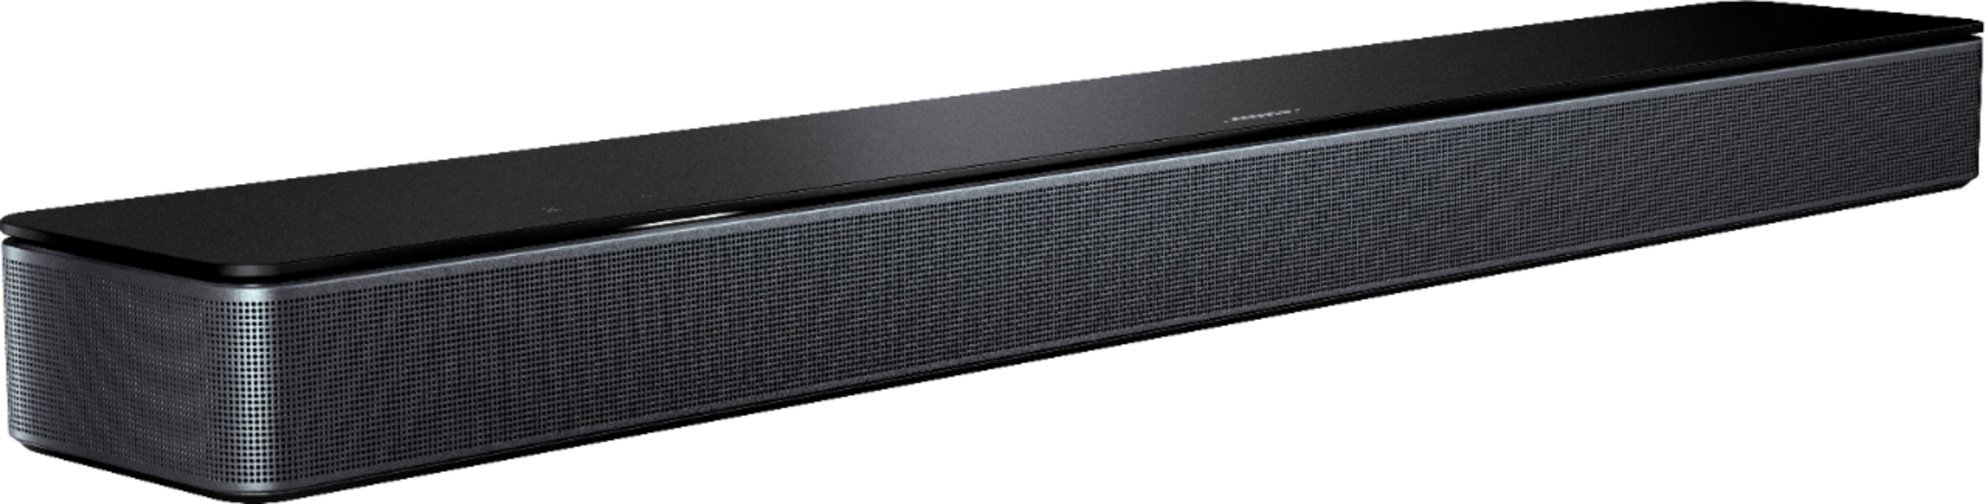 Bose - Smart Soundbar 300 with Voice Assistant - Black-Black